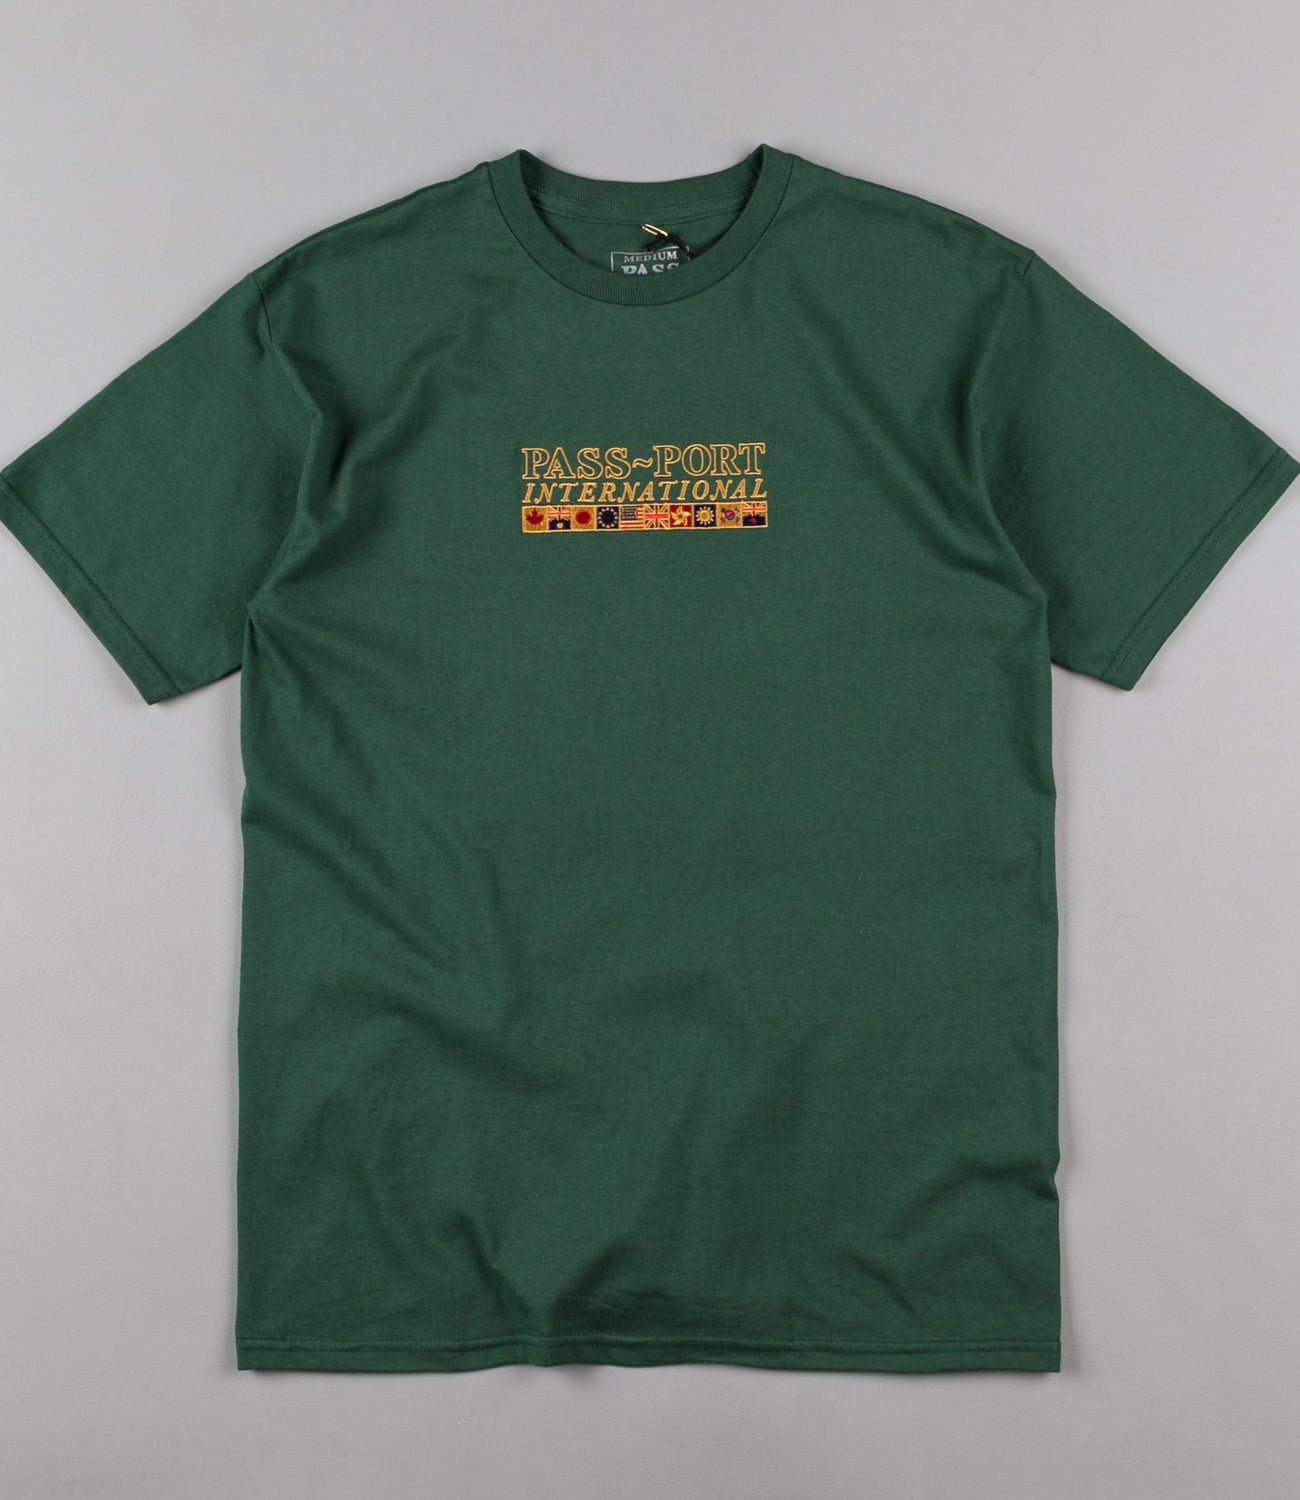 Pass Port International Embroidery T-Shirt - Forest Green | Flatspot